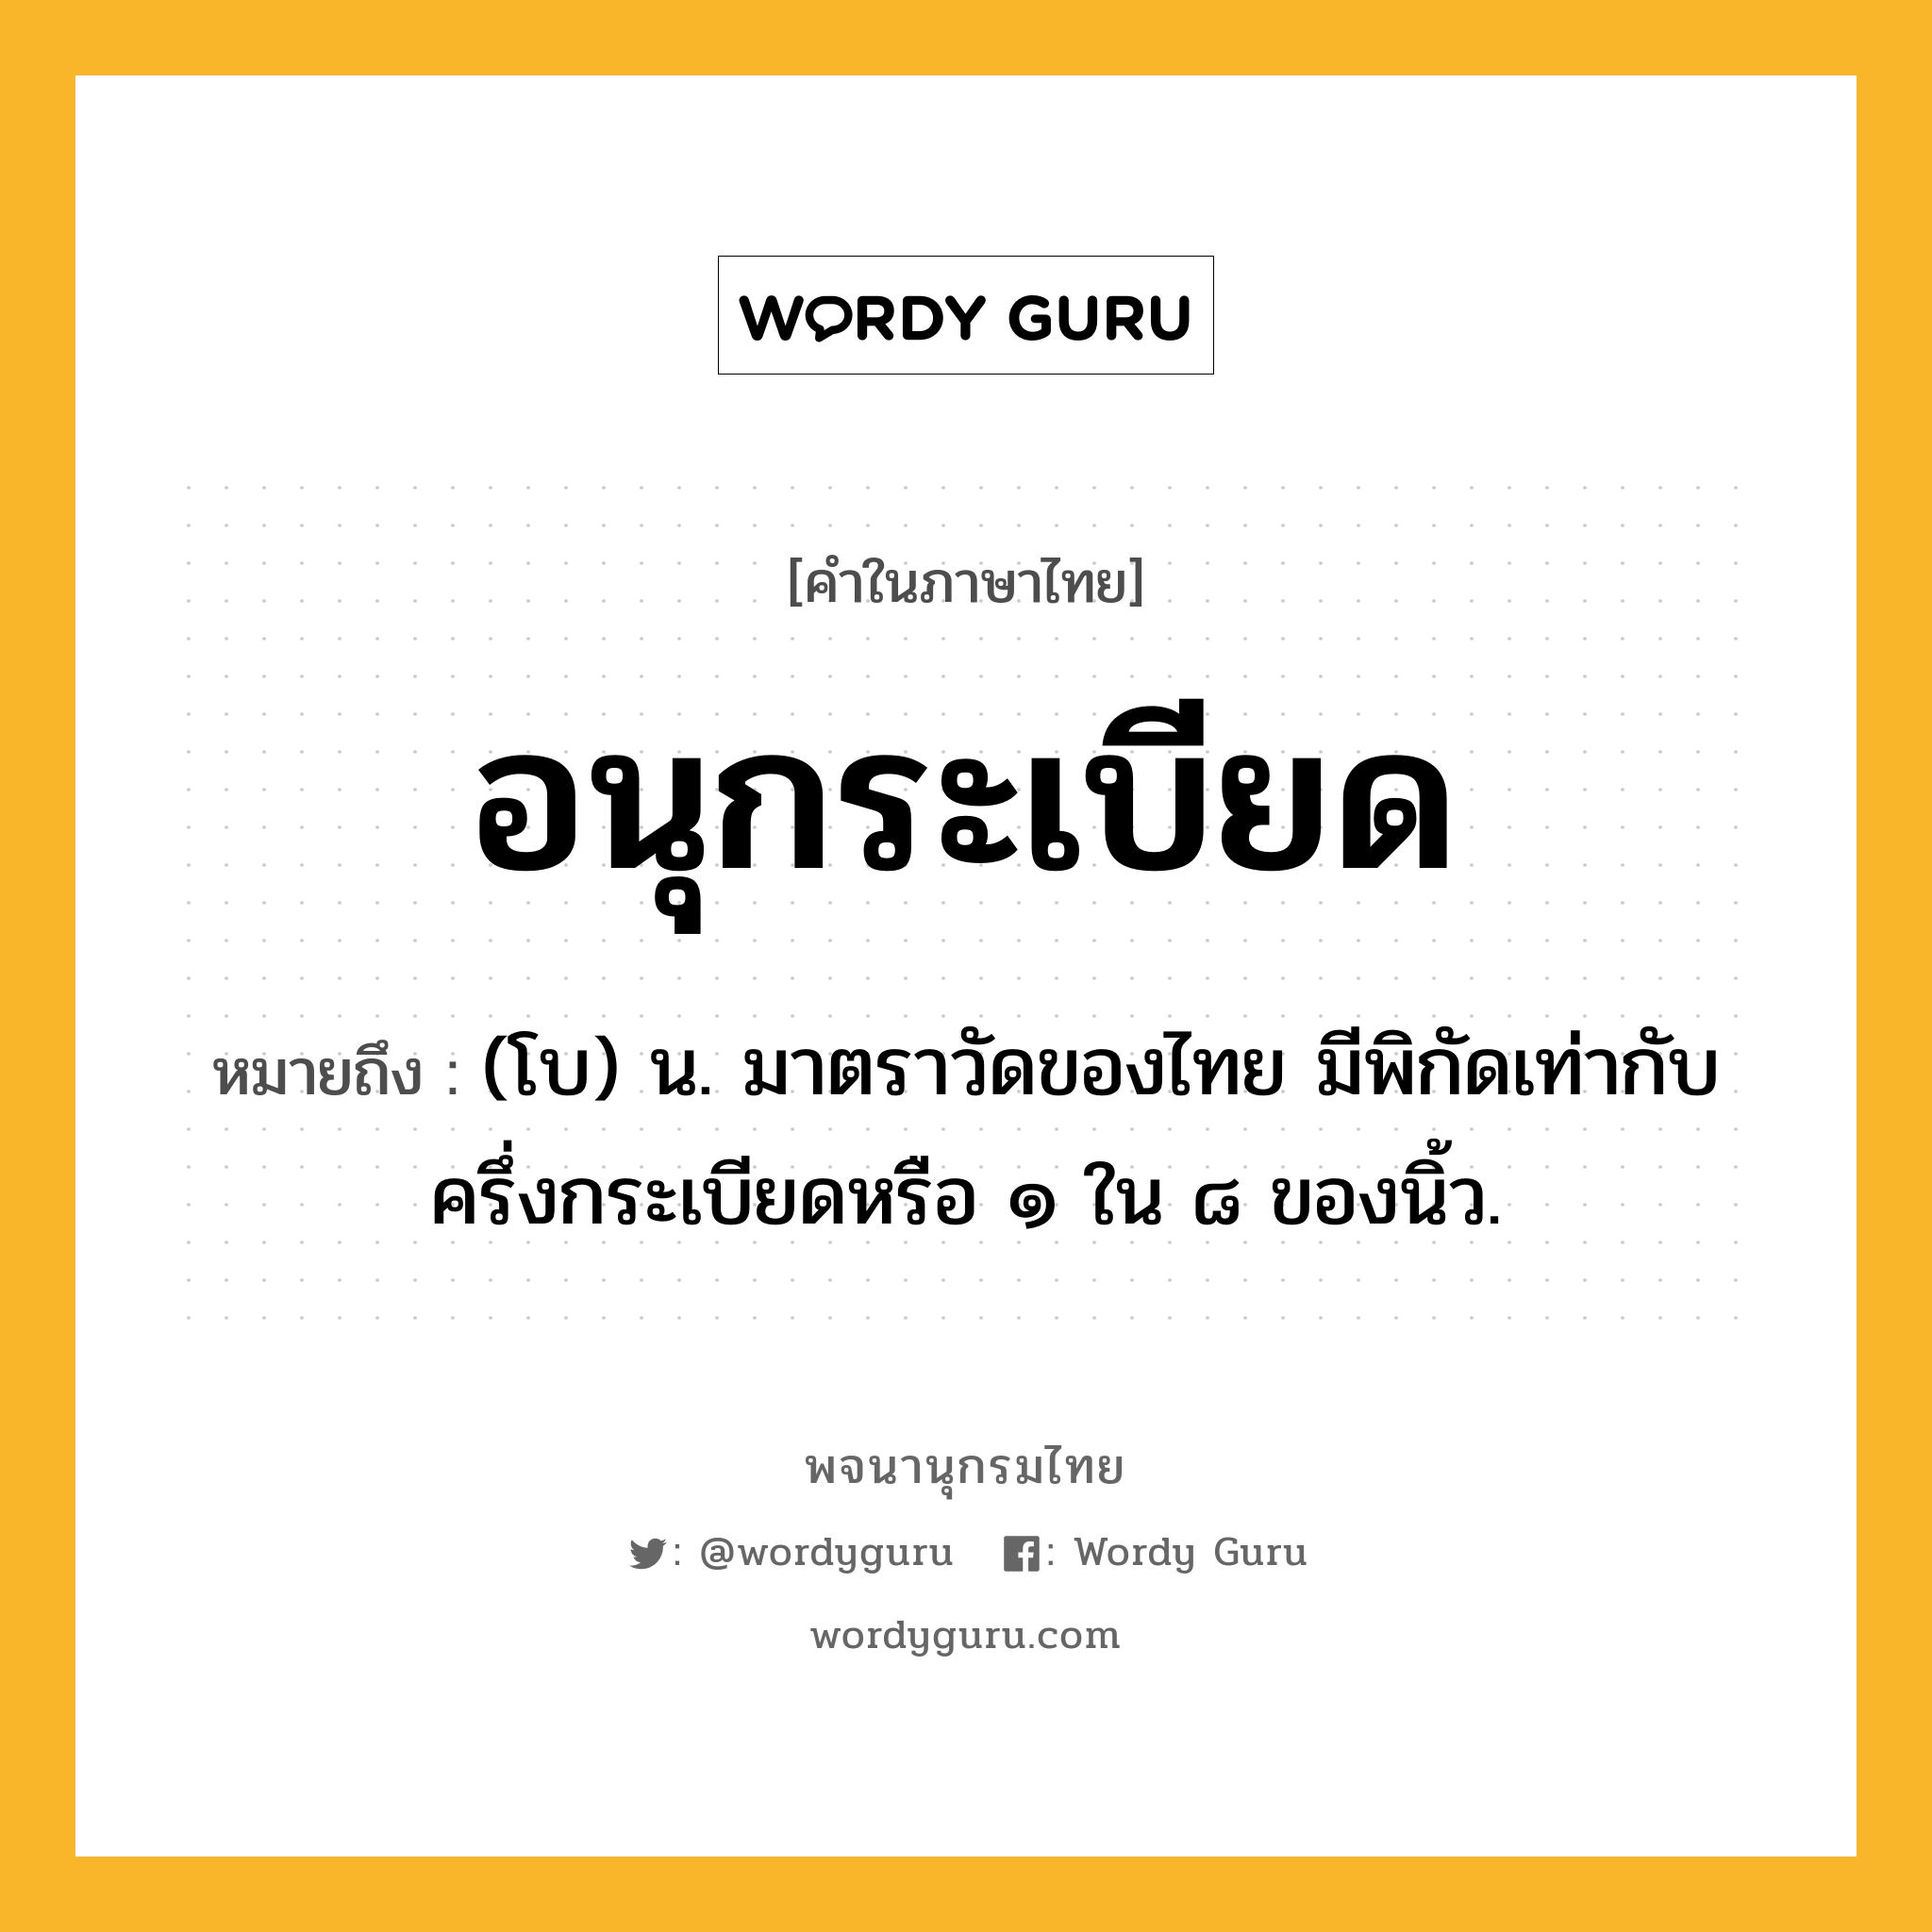 อนุกระเบียด หมายถึงอะไร?, คำในภาษาไทย อนุกระเบียด หมายถึง (โบ) น. มาตราวัดของไทย มีพิกัดเท่ากับครึ่งกระเบียดหรือ ๑ ใน ๘ ของนิ้ว.